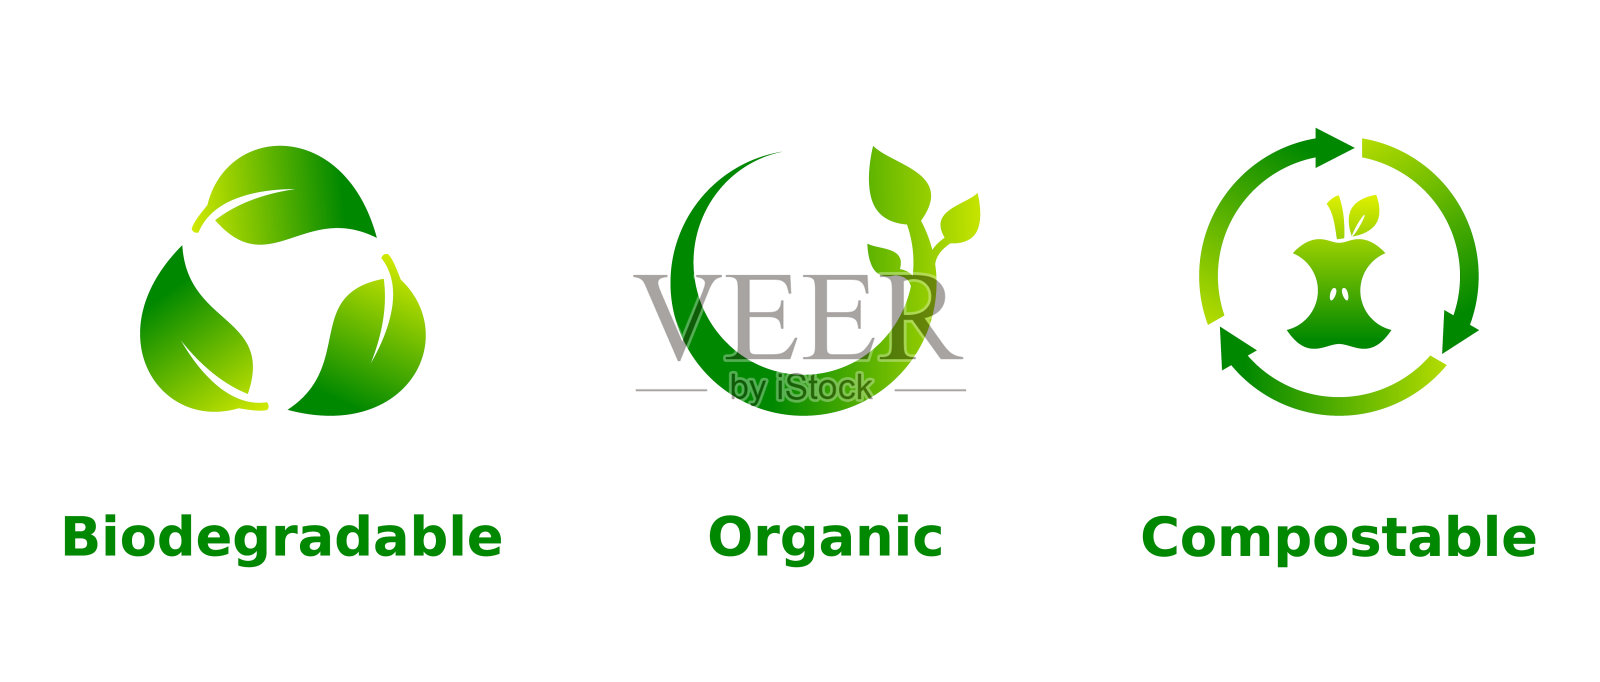 可生物降解，有机，可堆肥的图标集。白色背景上的三个绿色渐变环保标志。图标素材